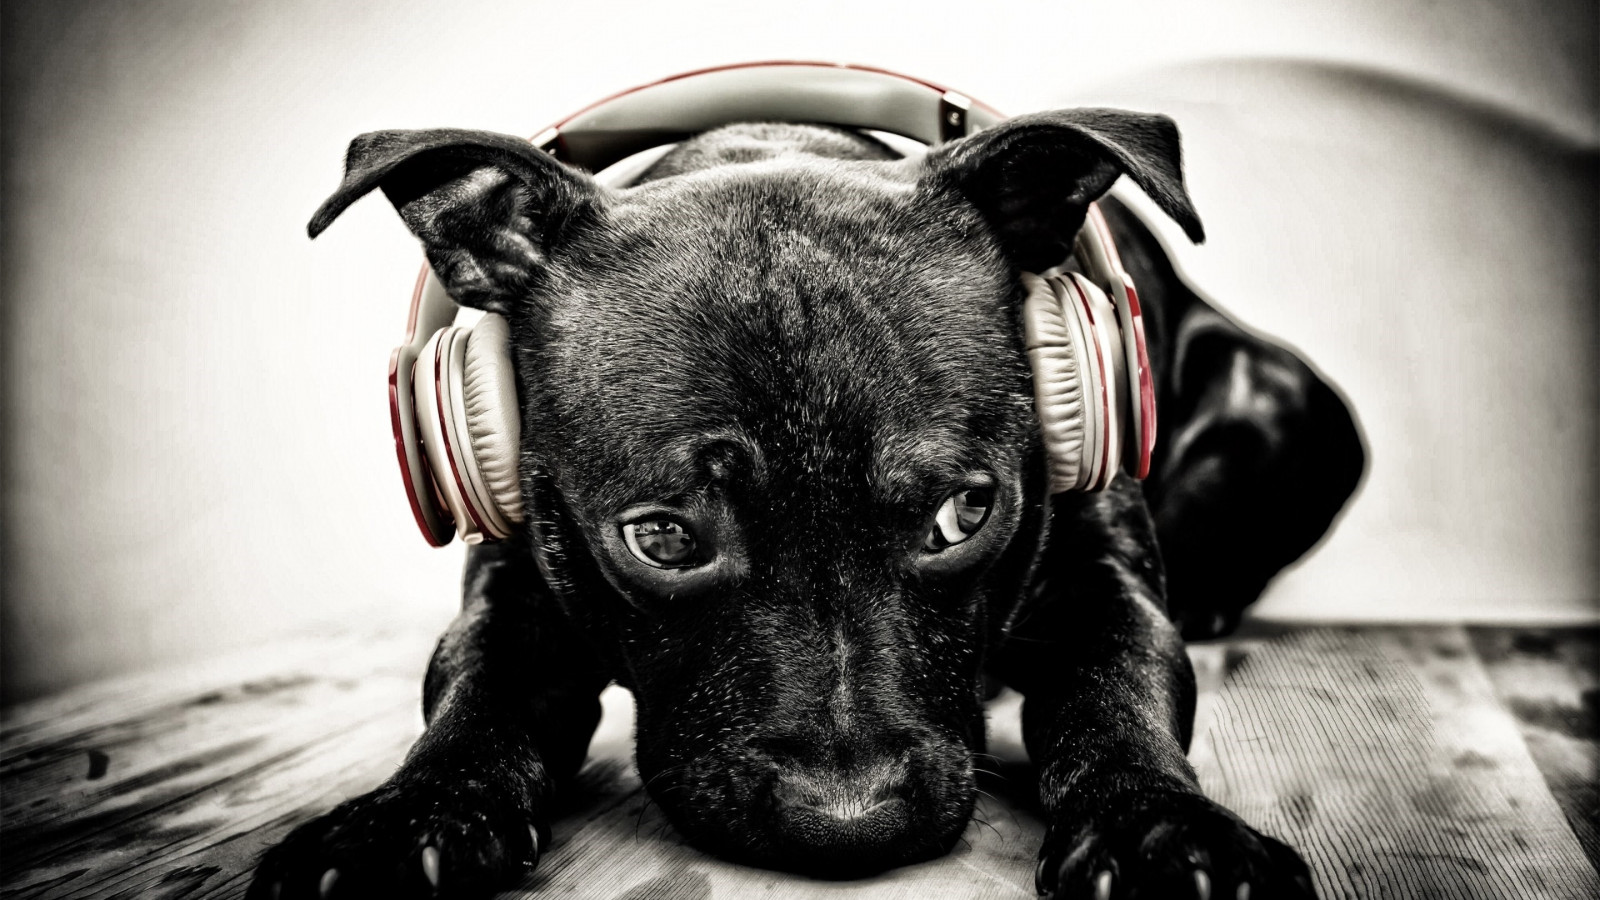 Puppy with beats headphones wallpaper 1600x900